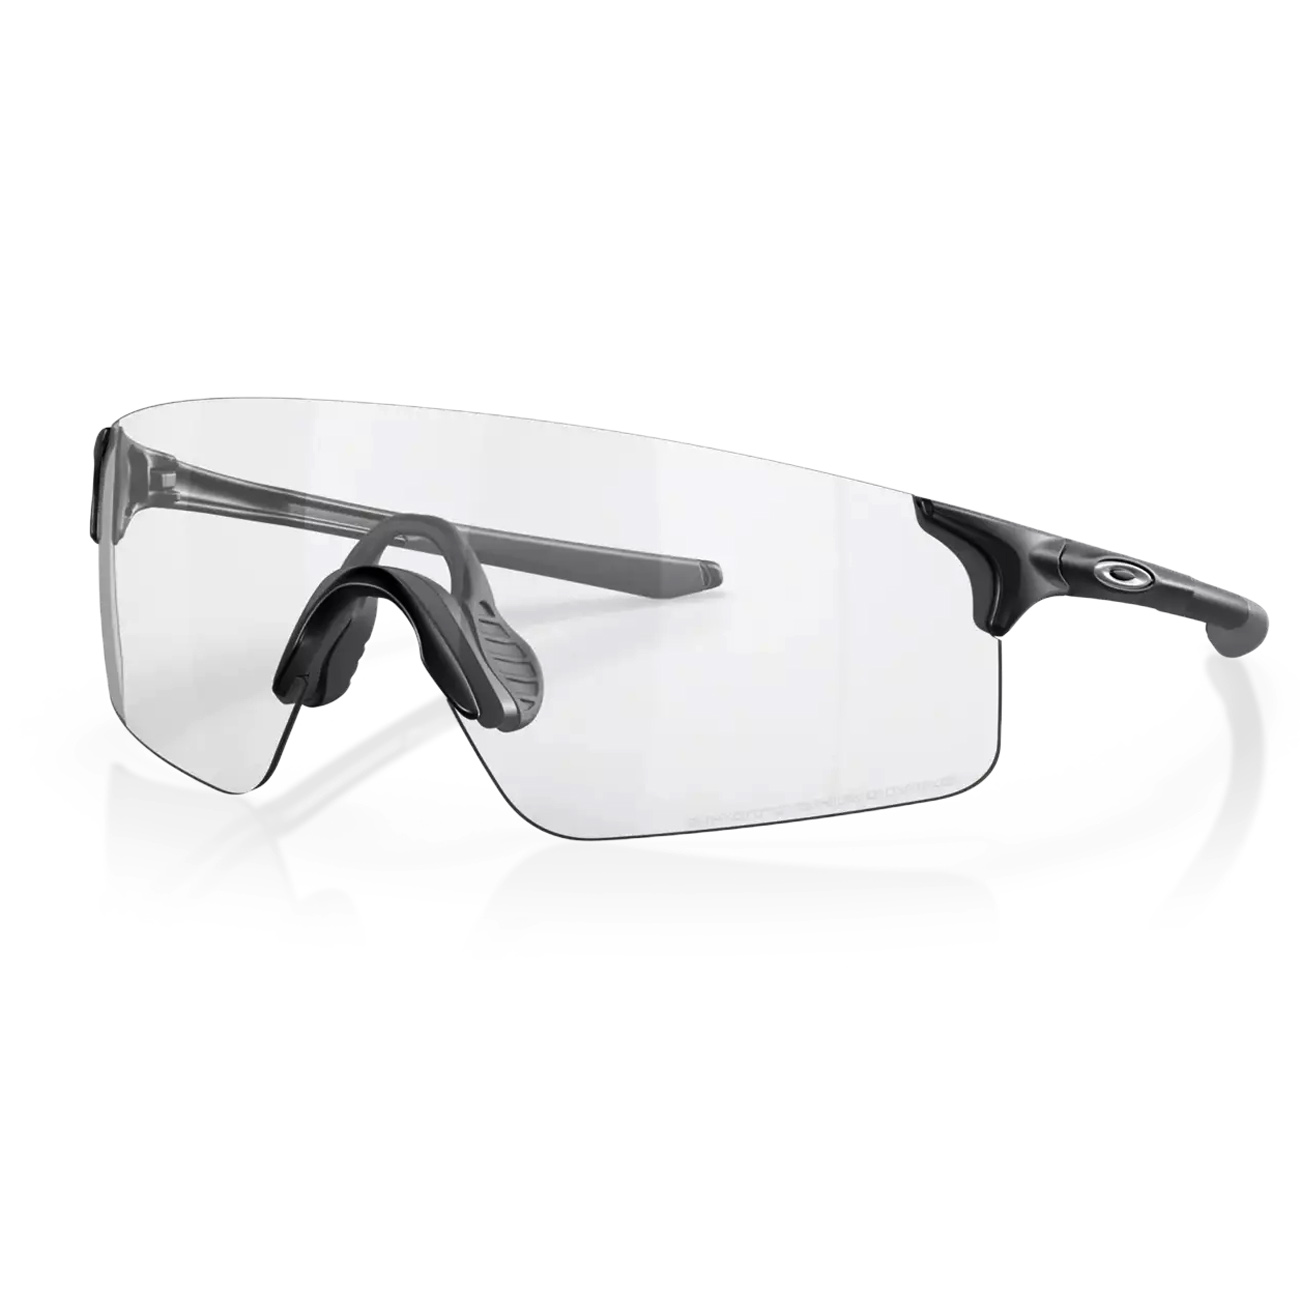 Produktbild von Oakley EVZero Blades Brille - Matte Black/Clear-Black Photochromic - OO9454-0938